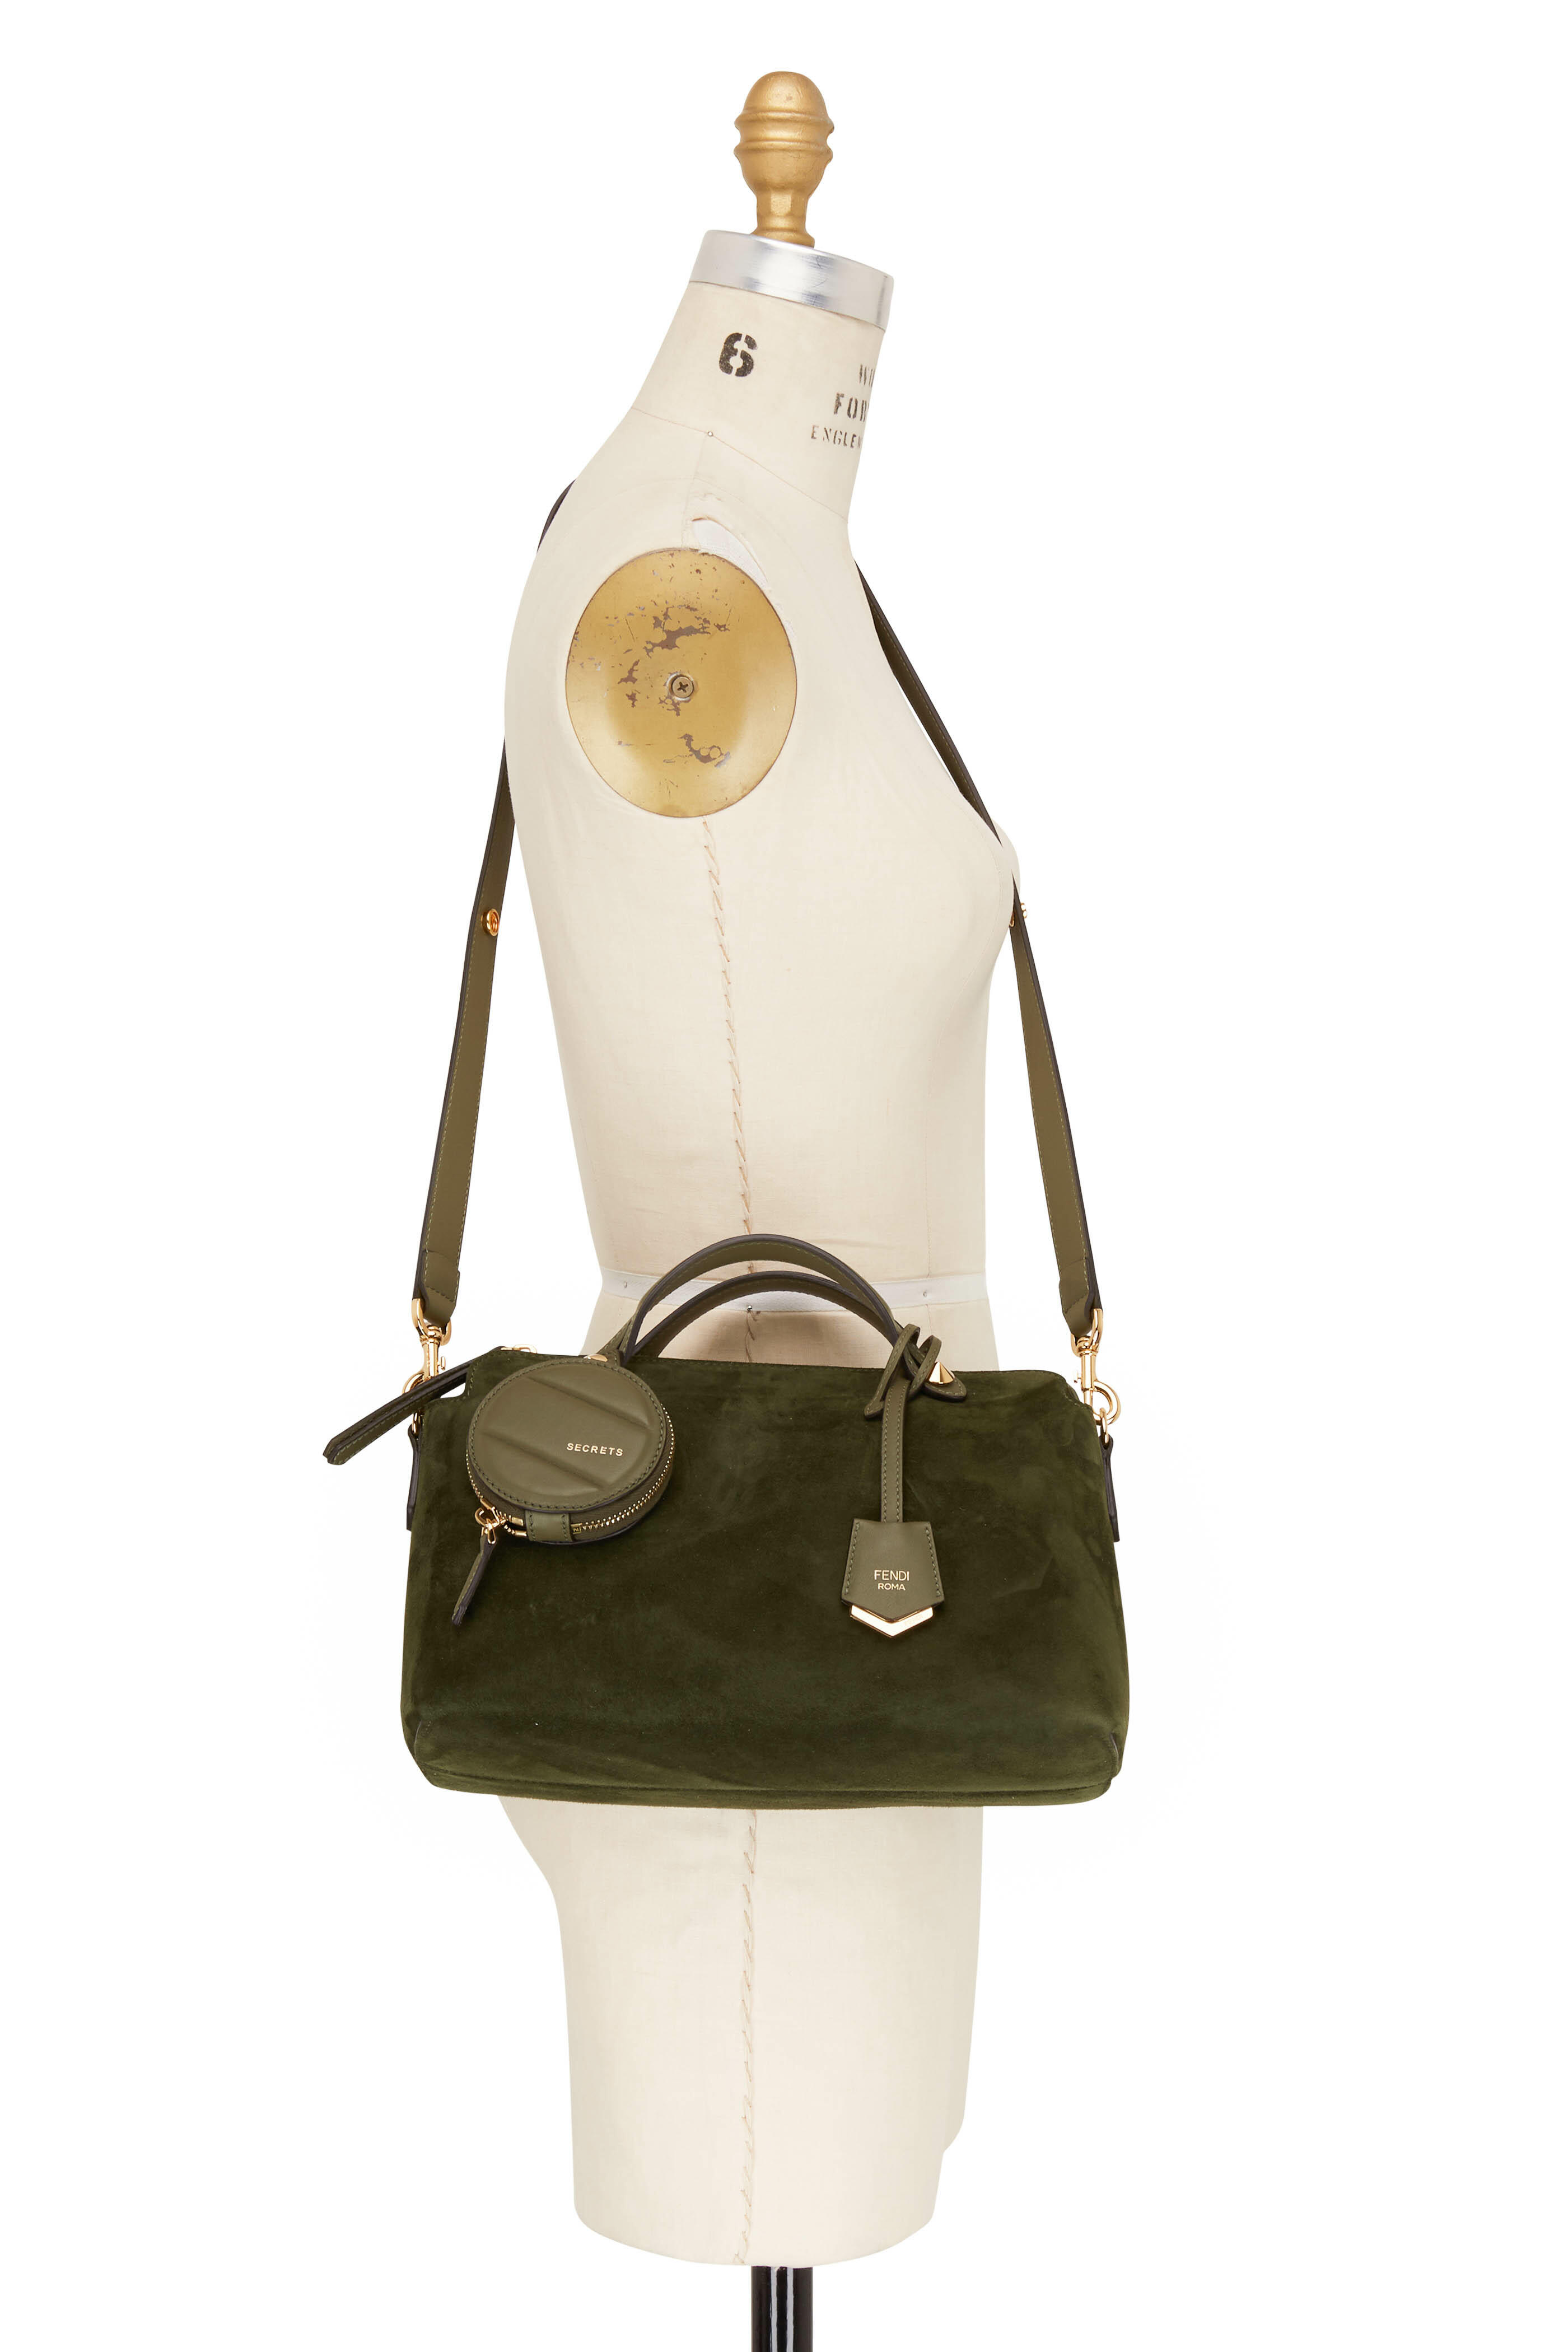 Fendi 'Boston By The Way Mini' shoulder bag, Women's Bags